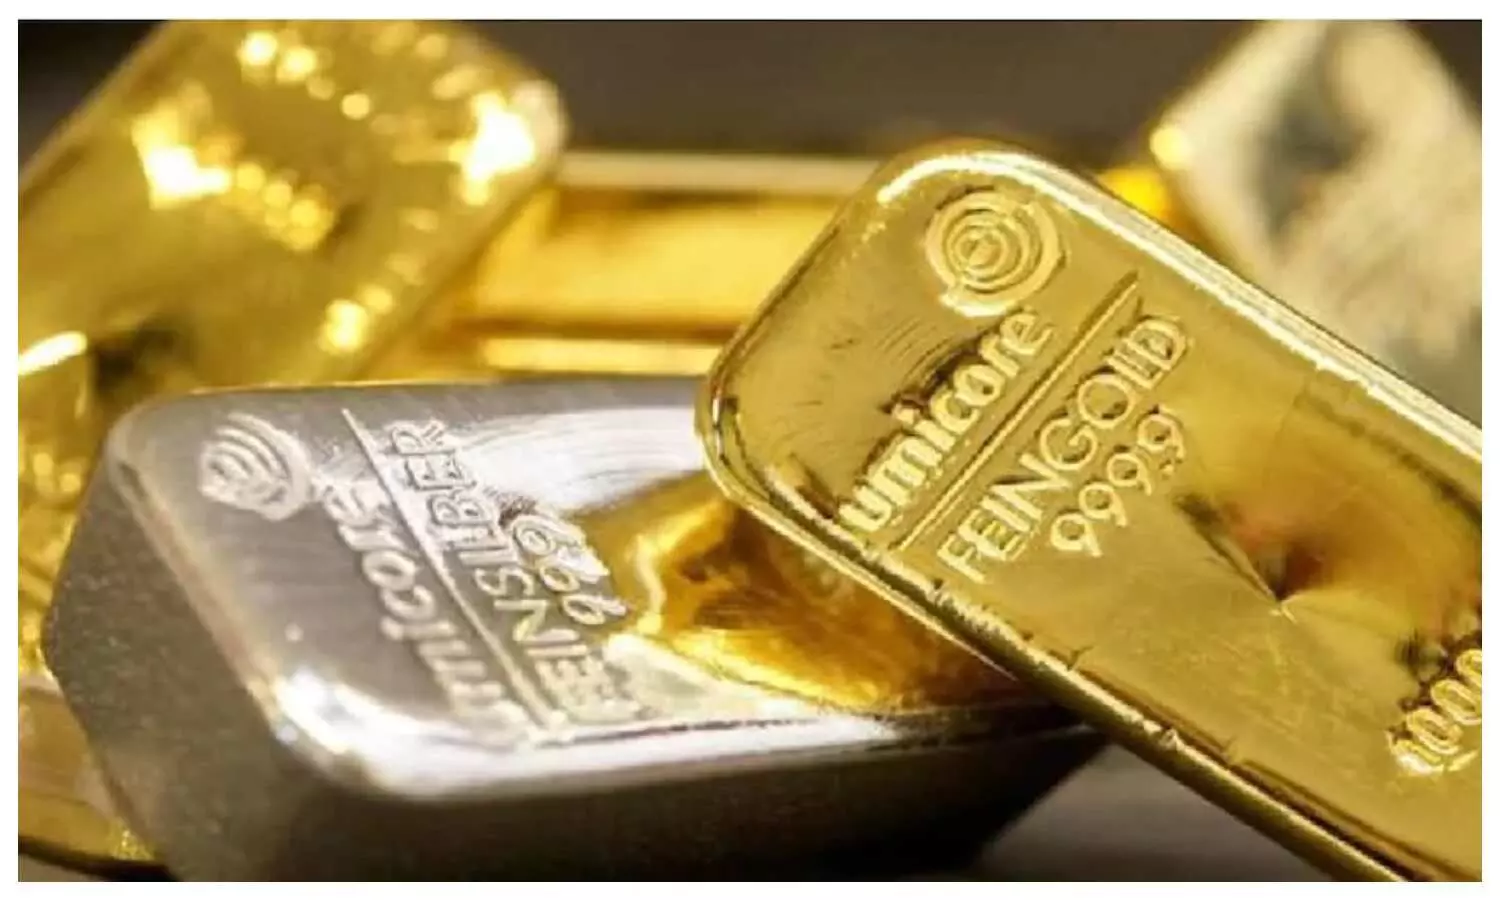 UP Gold Silver Price Today: सोना चांदी के भाव में आई गिरावट, खरीदारी करने से पहले चेक करे लें यहां रेट